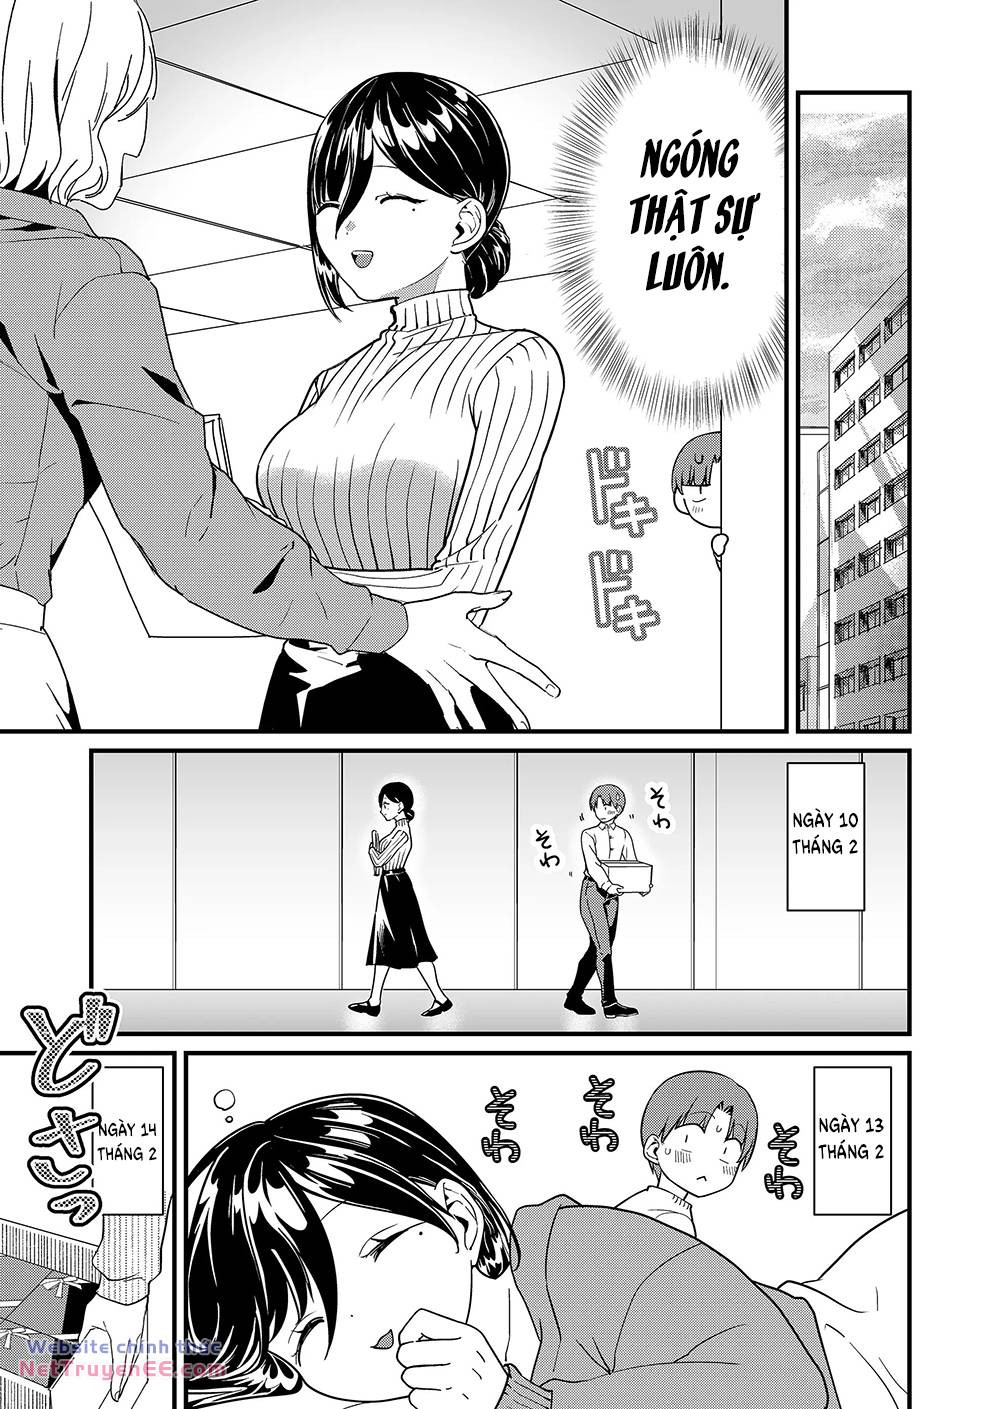 Tokimori-san Chẳng Chút Phòng Bị!!: Chapter 36: Tokimori-san và valentine